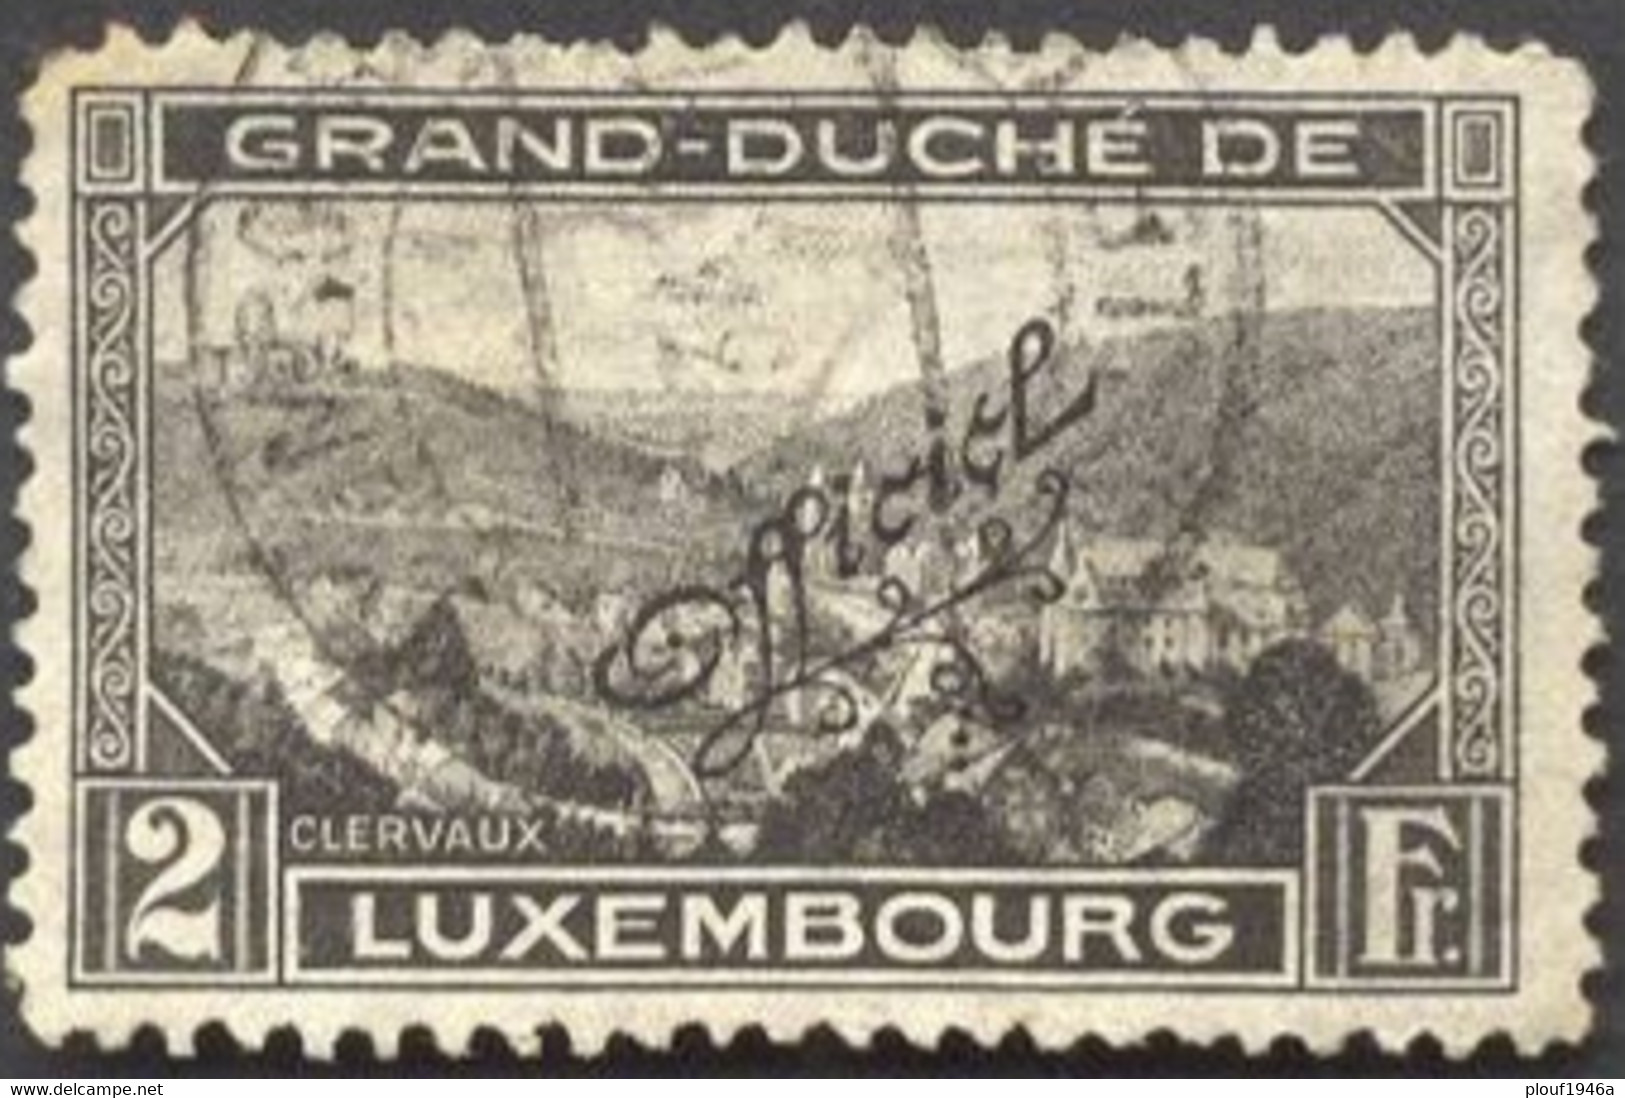 Pays : 286,04 (Luxembourg)  Yvert Et Tellier N° : S 187 (o) - Dienstmarken